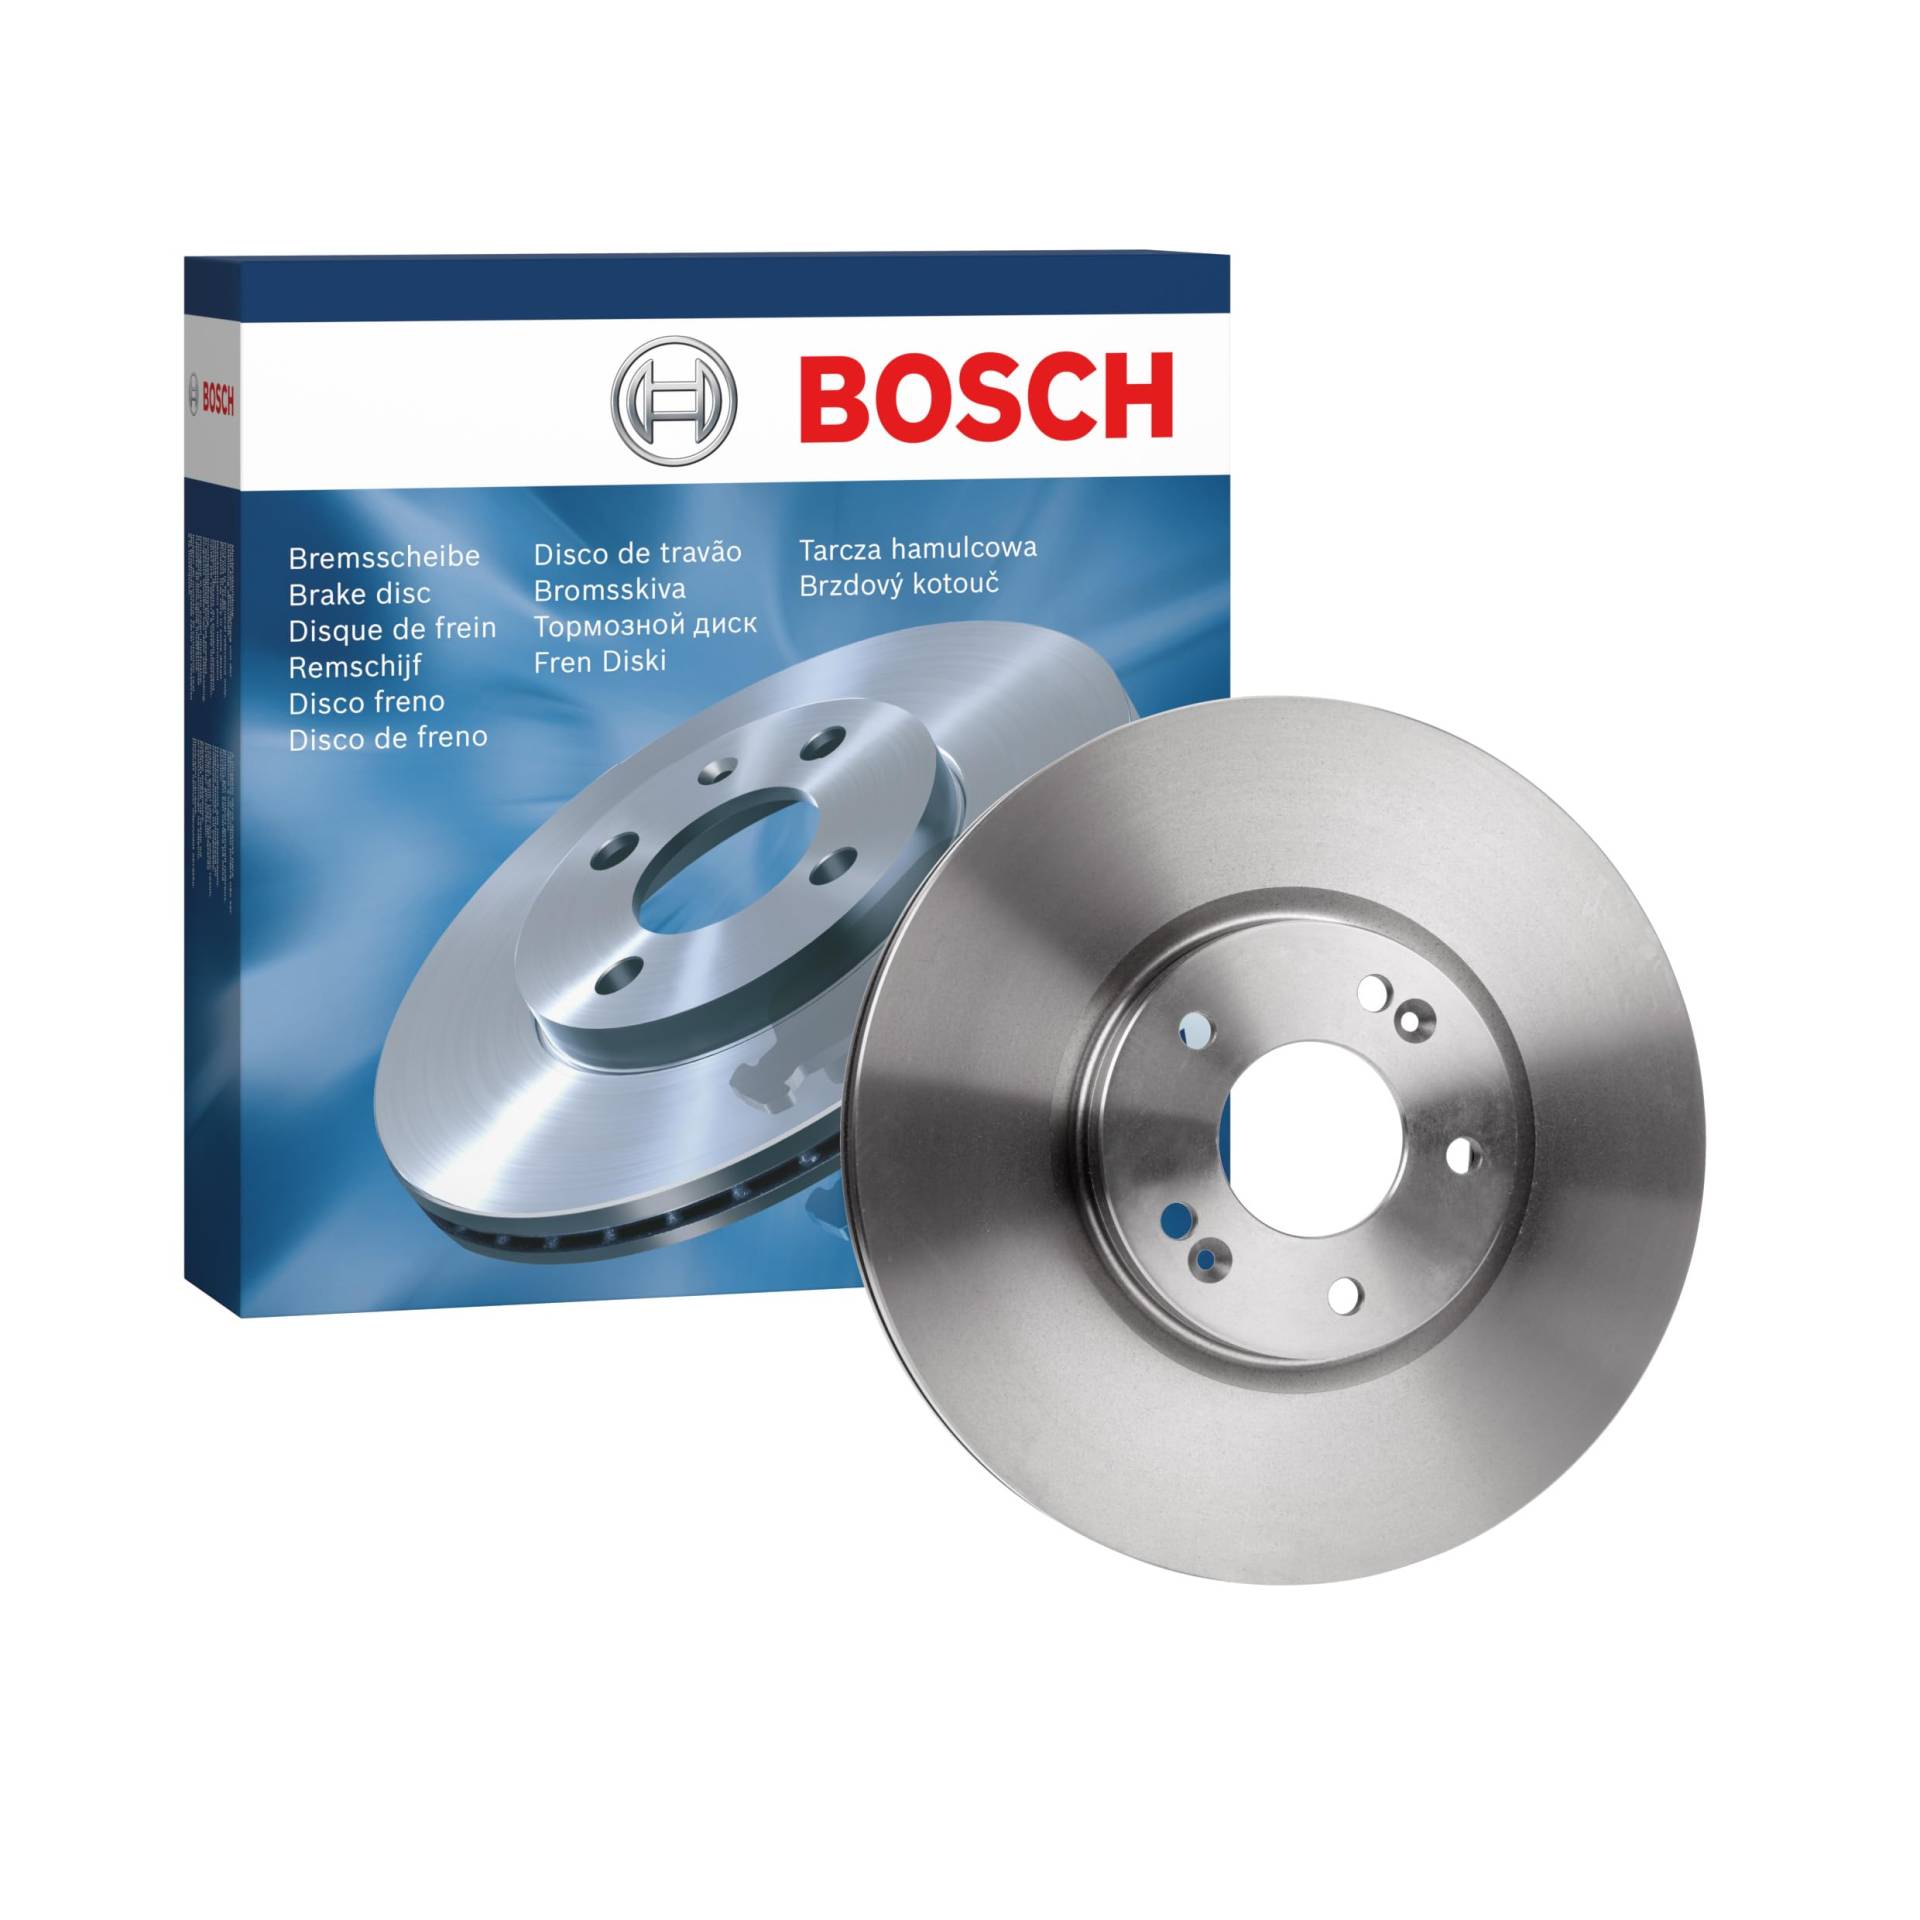 Bosch BD1527 Bremsscheiben - Vorderachse - ECE-R90 Zertifizierung - eine Bremsscheibe von Bosch Automotive